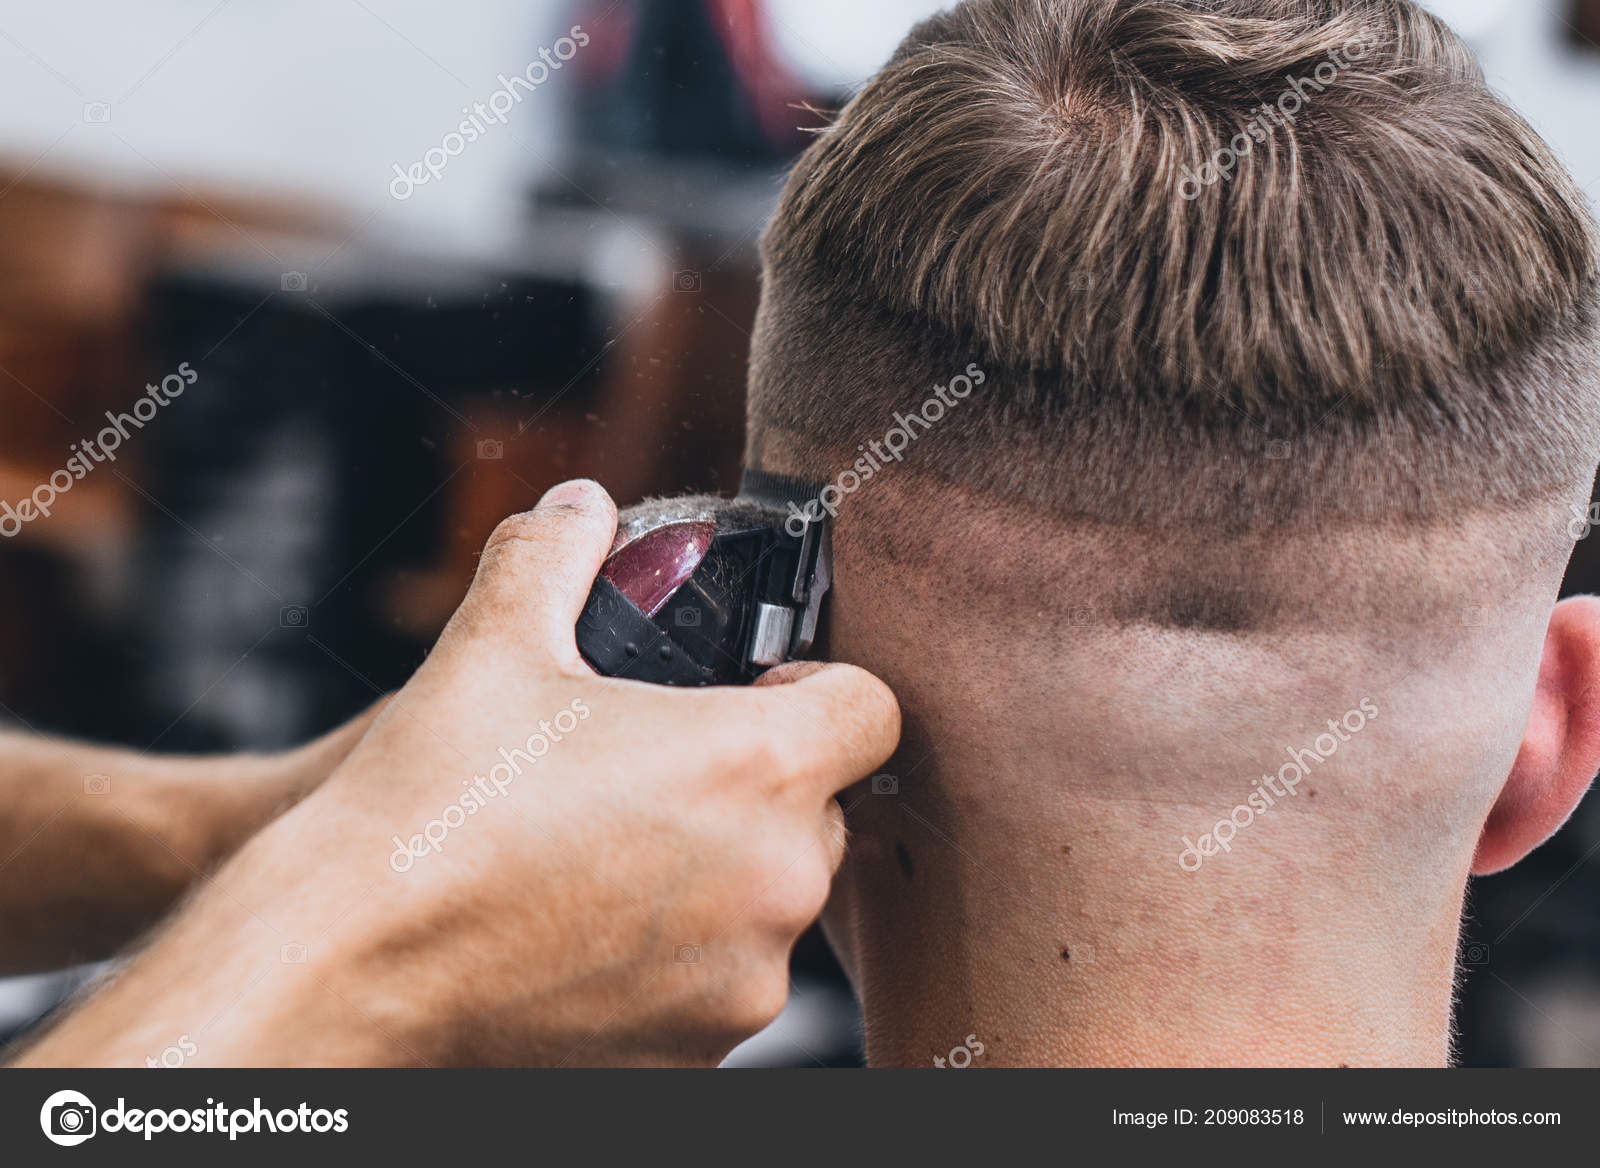 haircut men machine